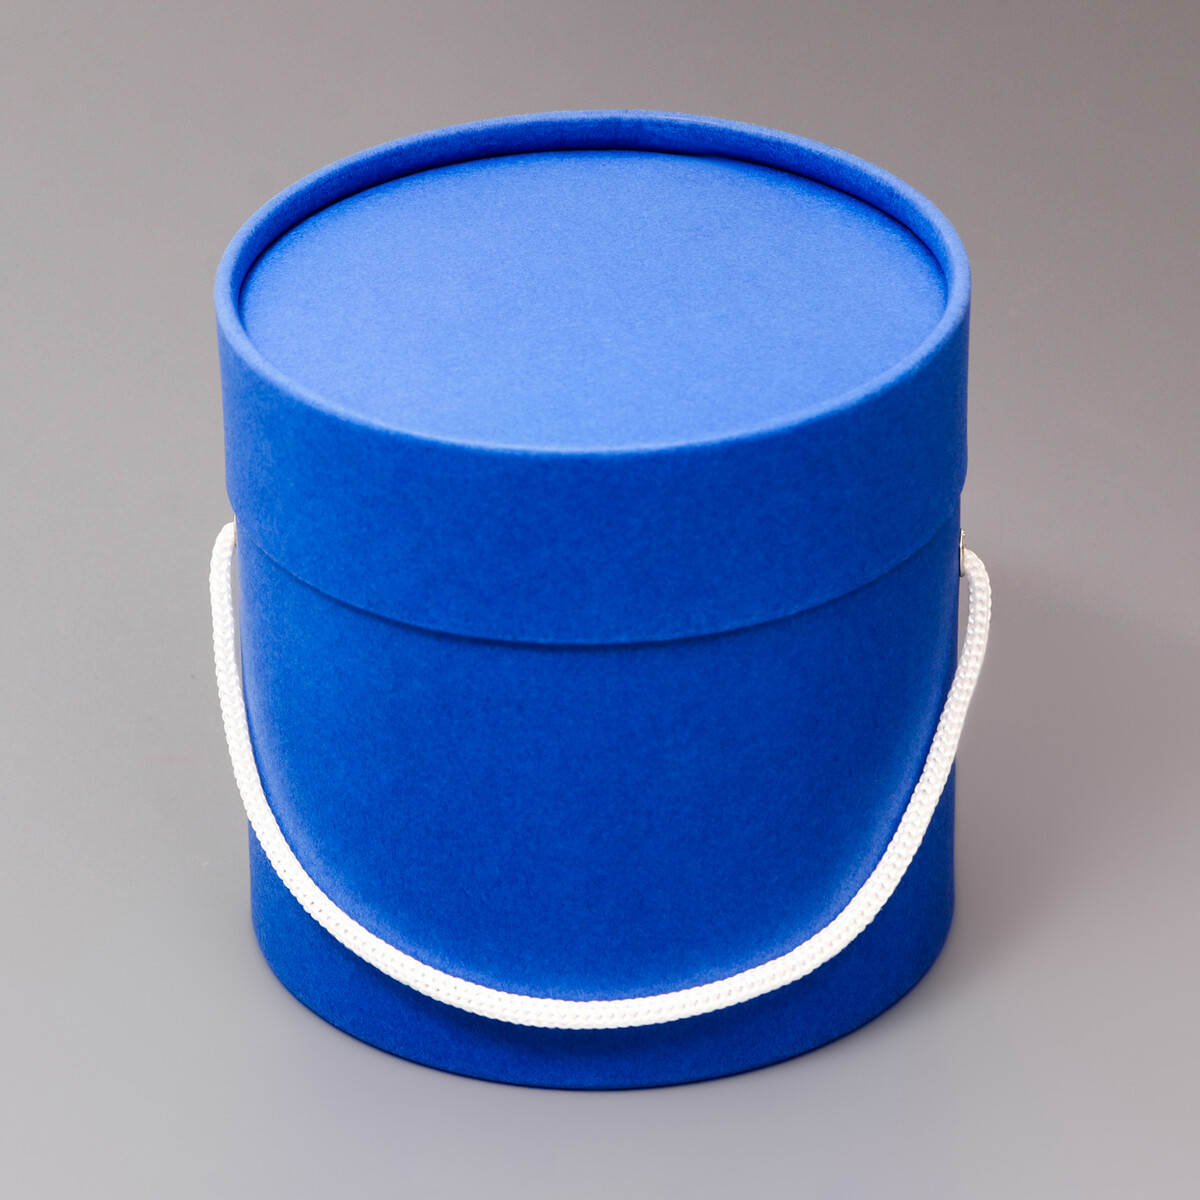 Подарочная коробка, круглая, синяя,с шнурком, 12 х 12 см коробка подарочная happy birthday синяя 15 15 8 5см картон